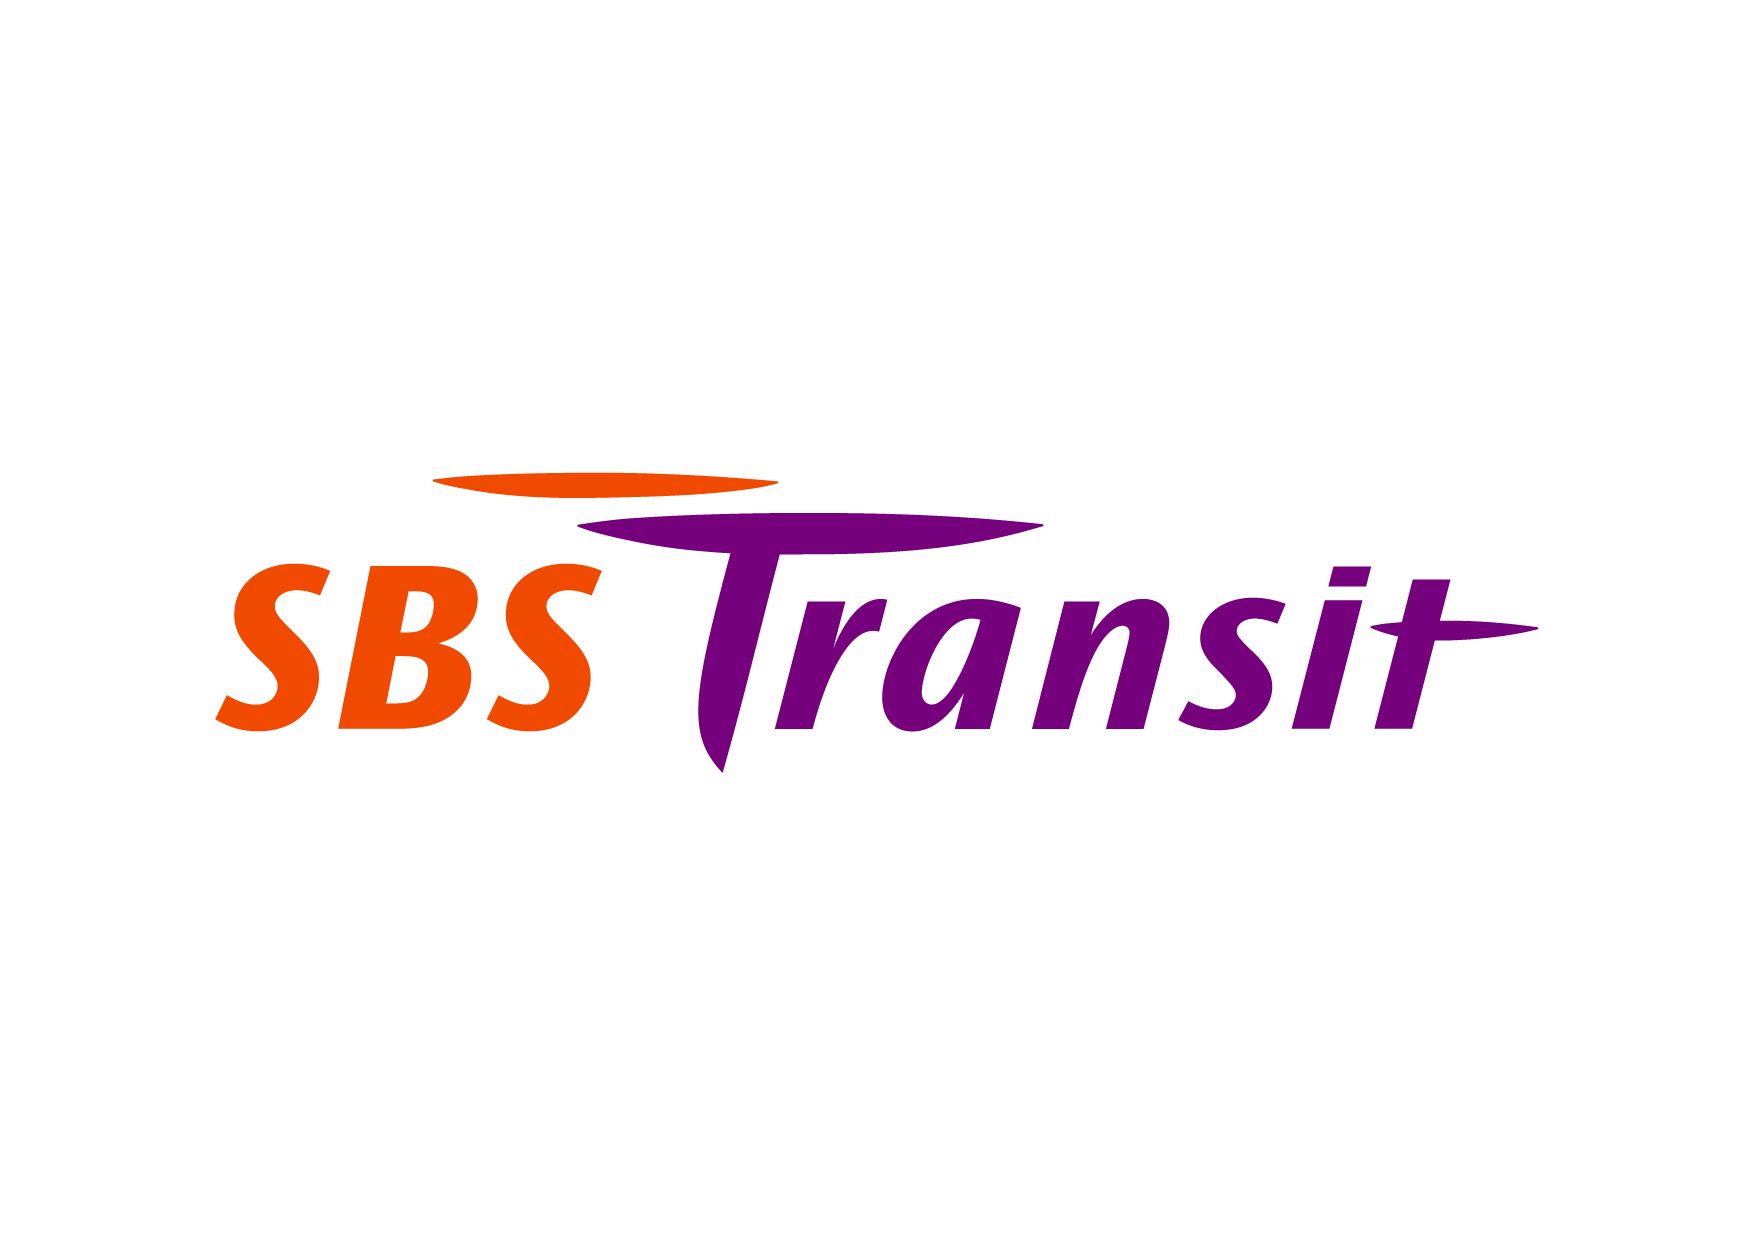 SBS Transit